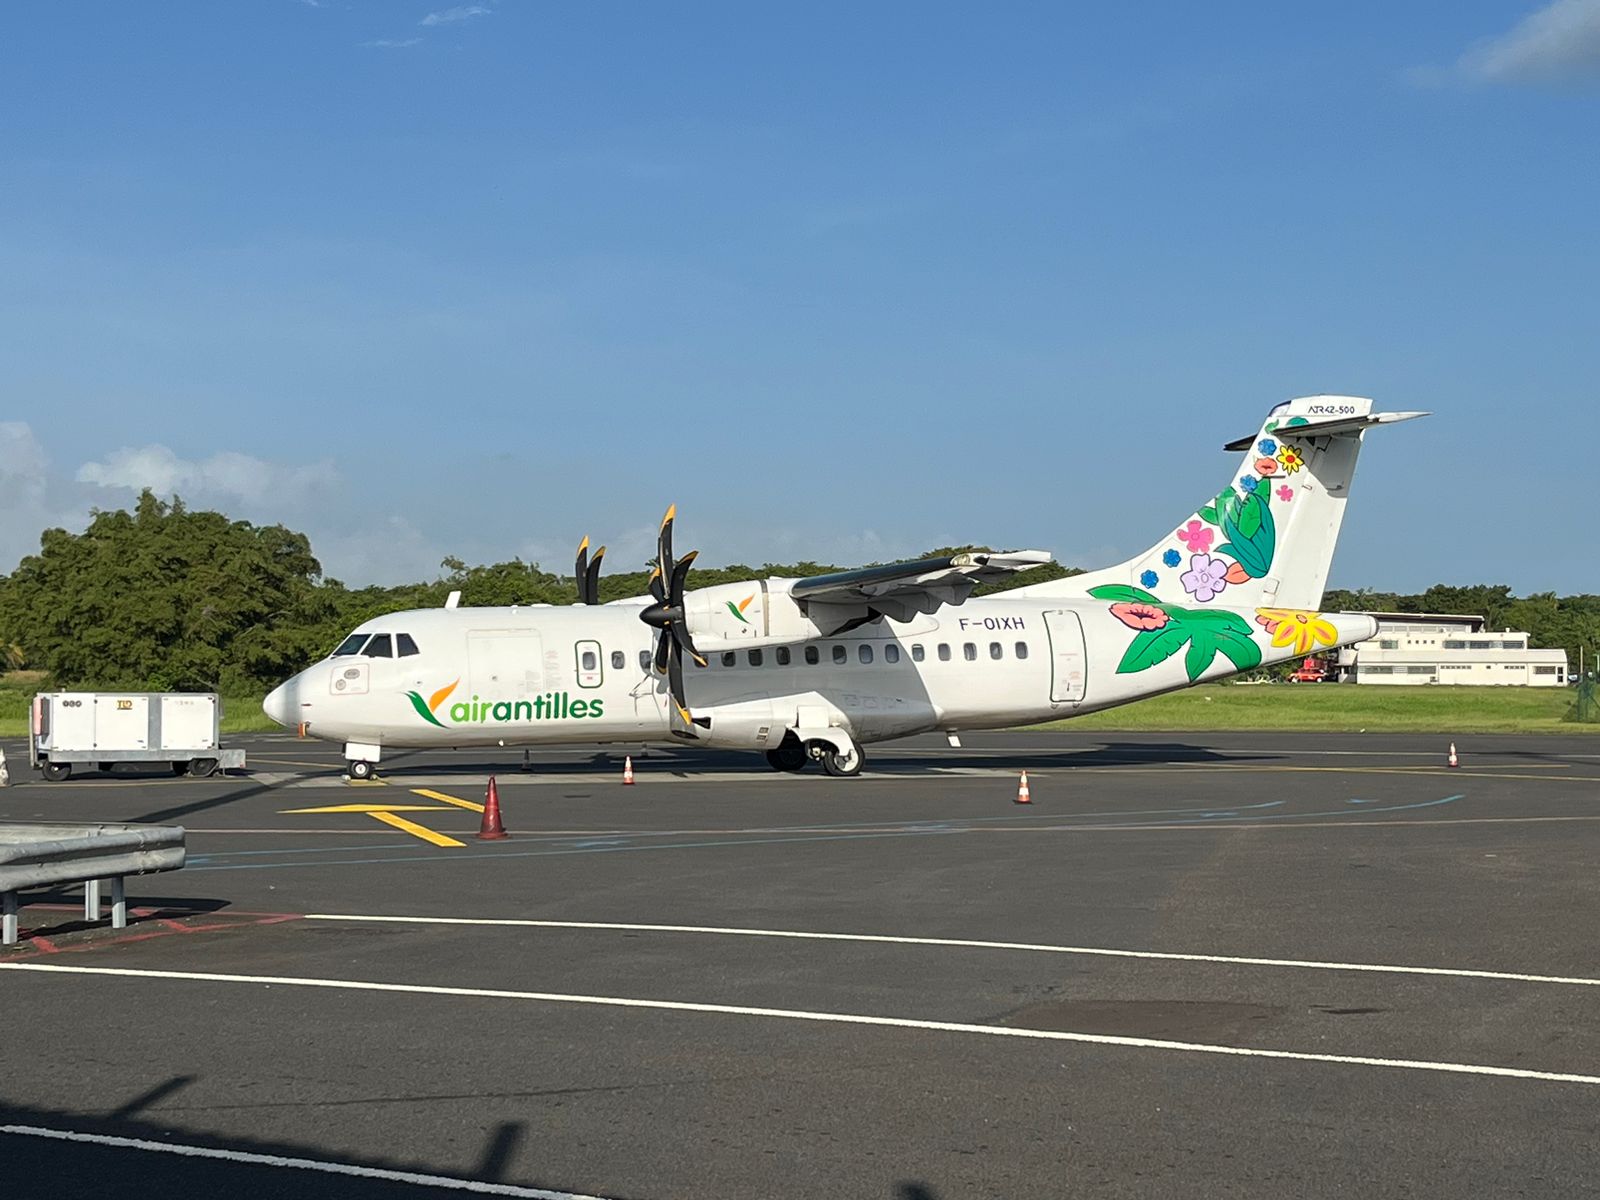     Air Antilles obtient enfin son Certificat de transport aérien (CTA)

